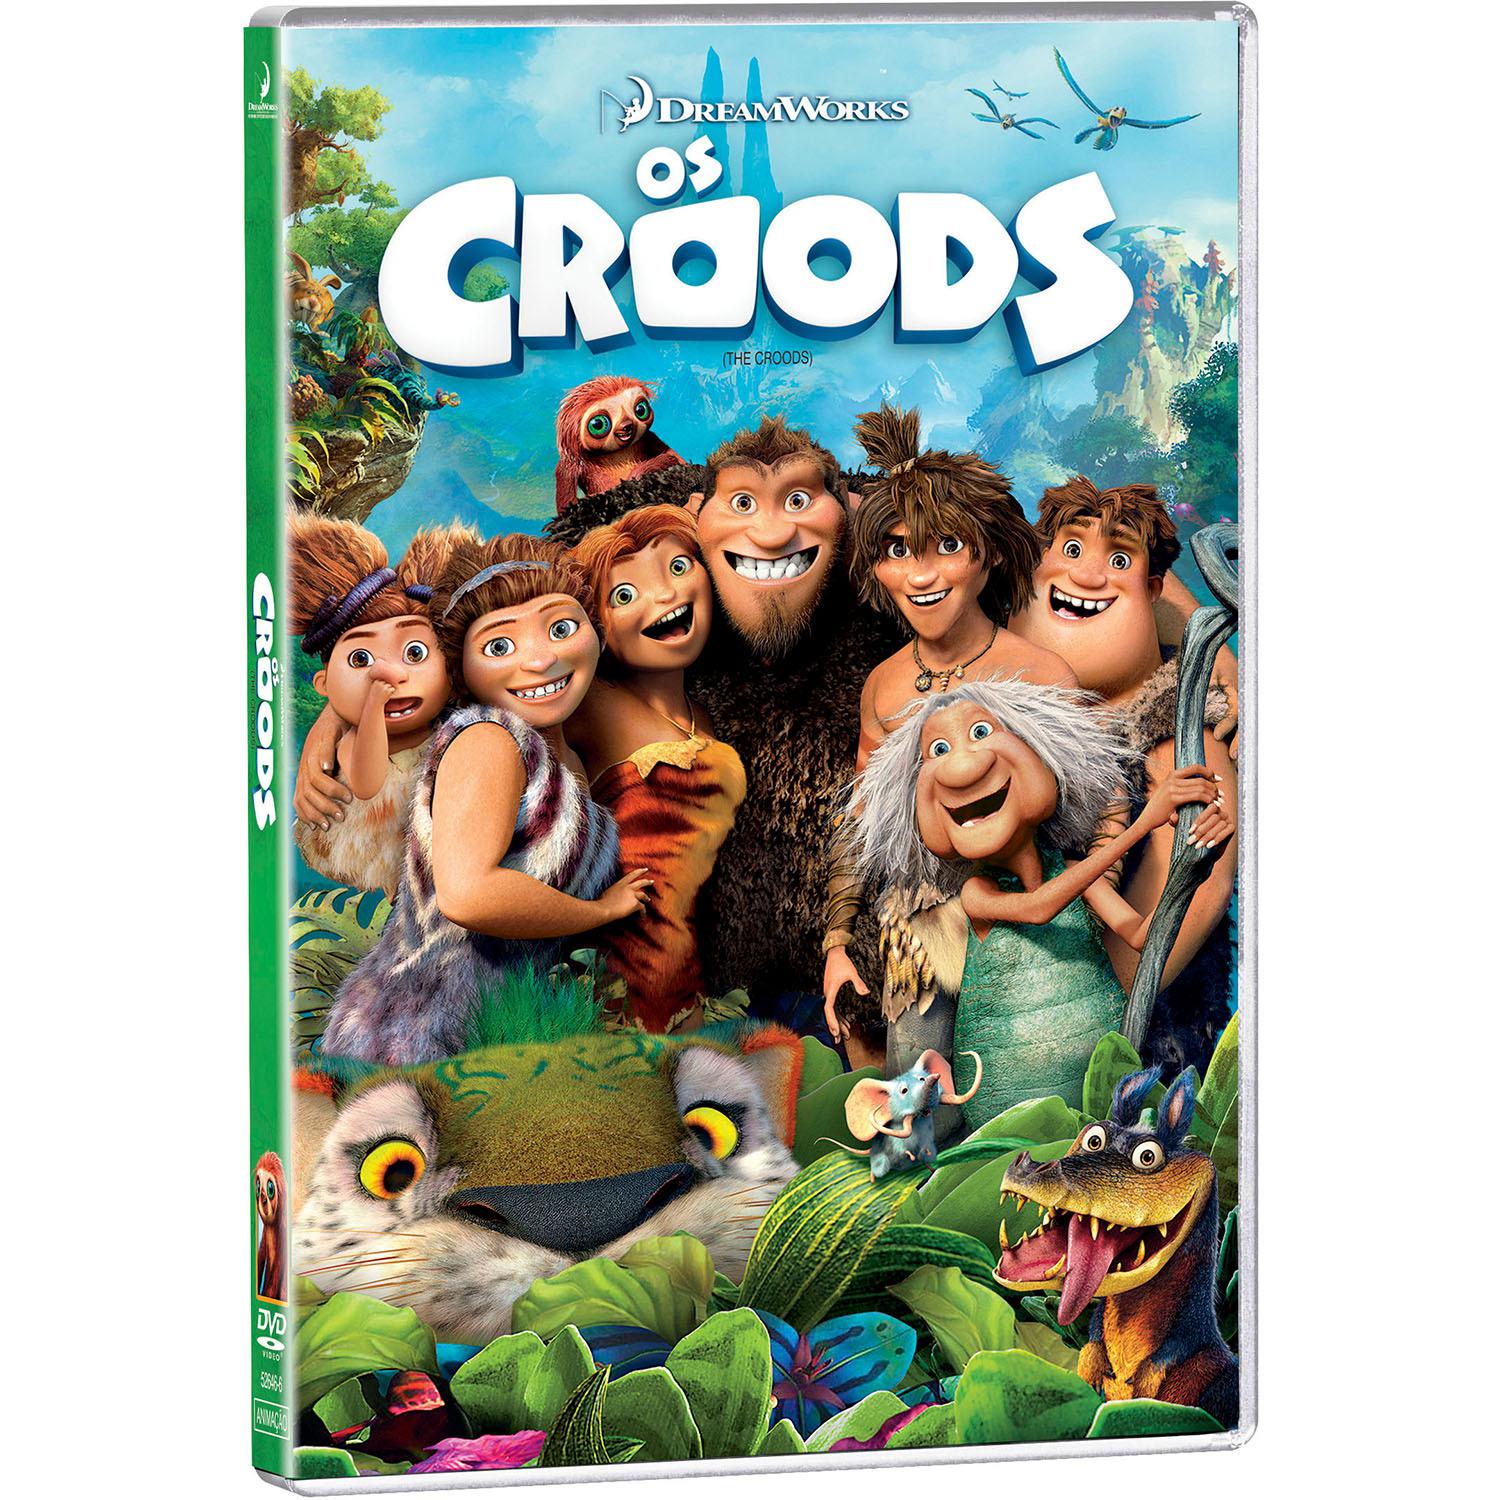 DVD - Os Croods é bom? Vale a pena?